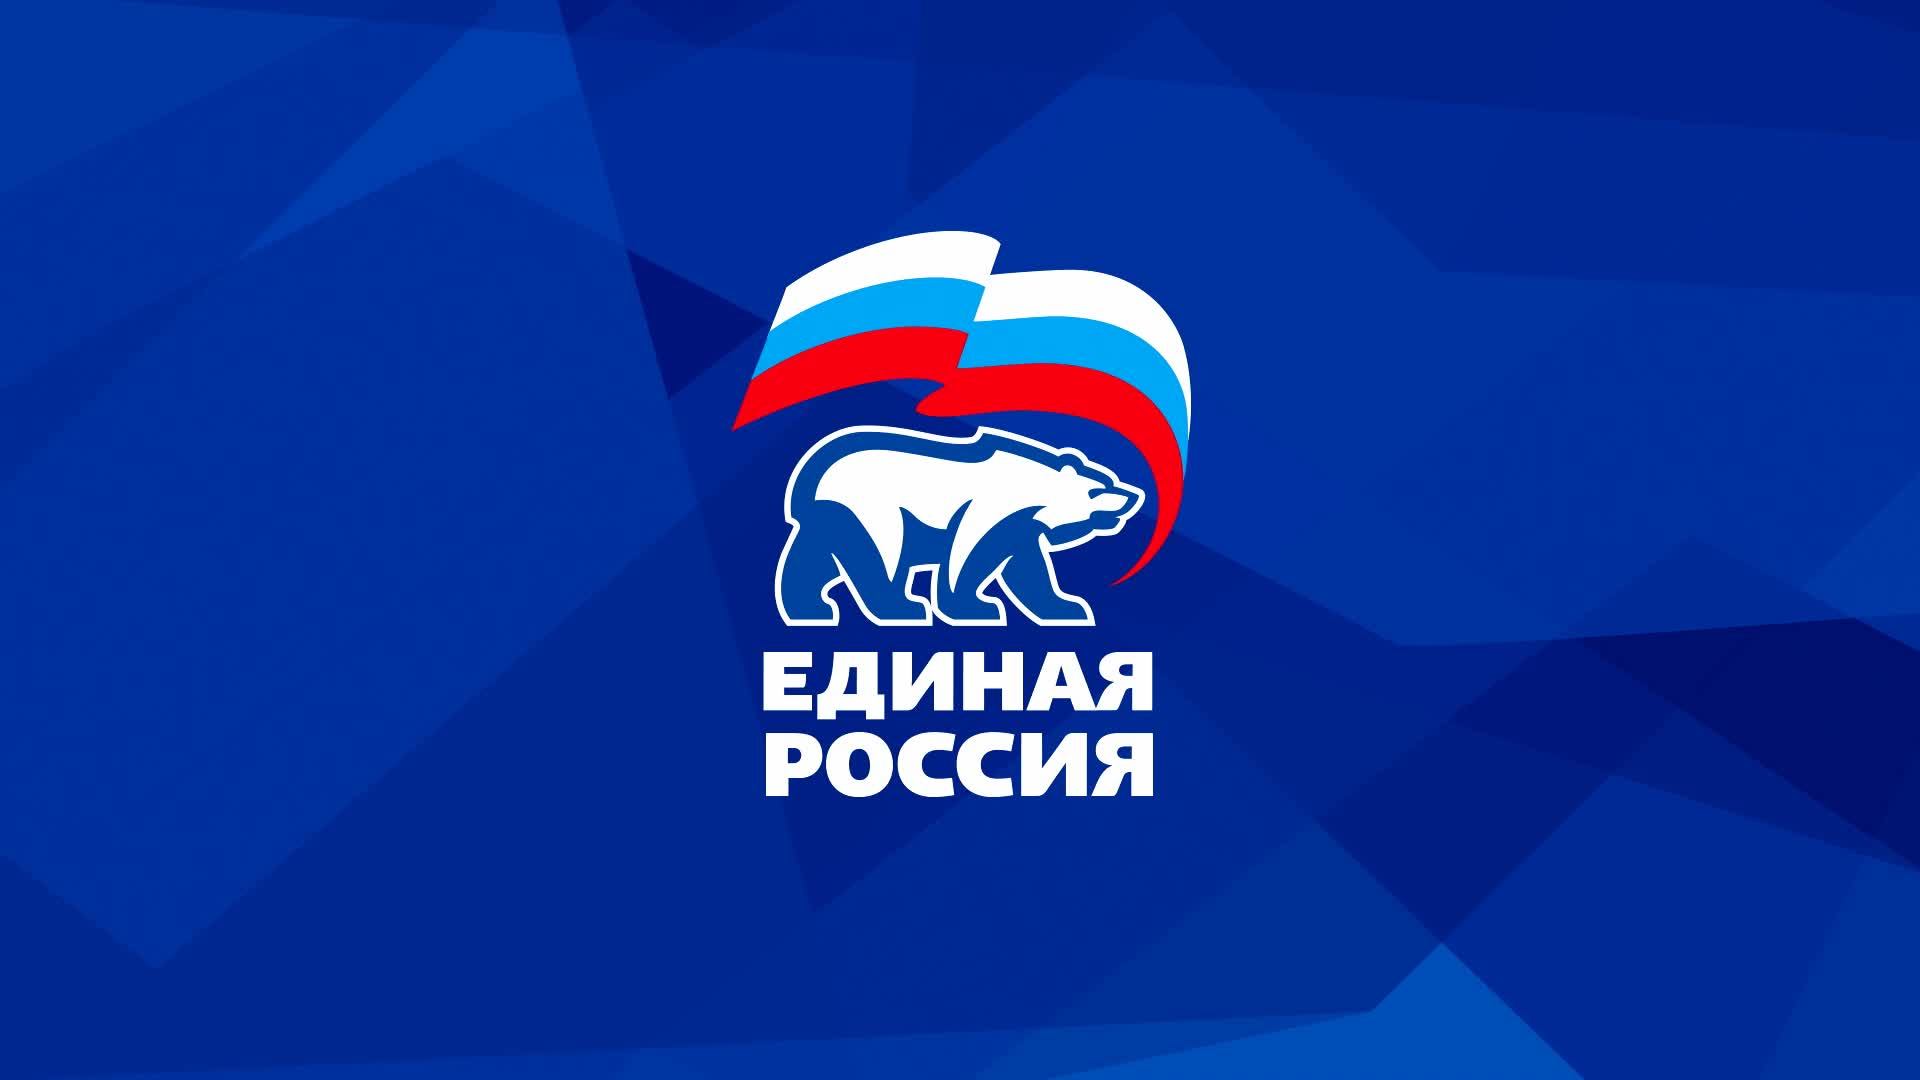 Логотип партии Единая Россия PNG